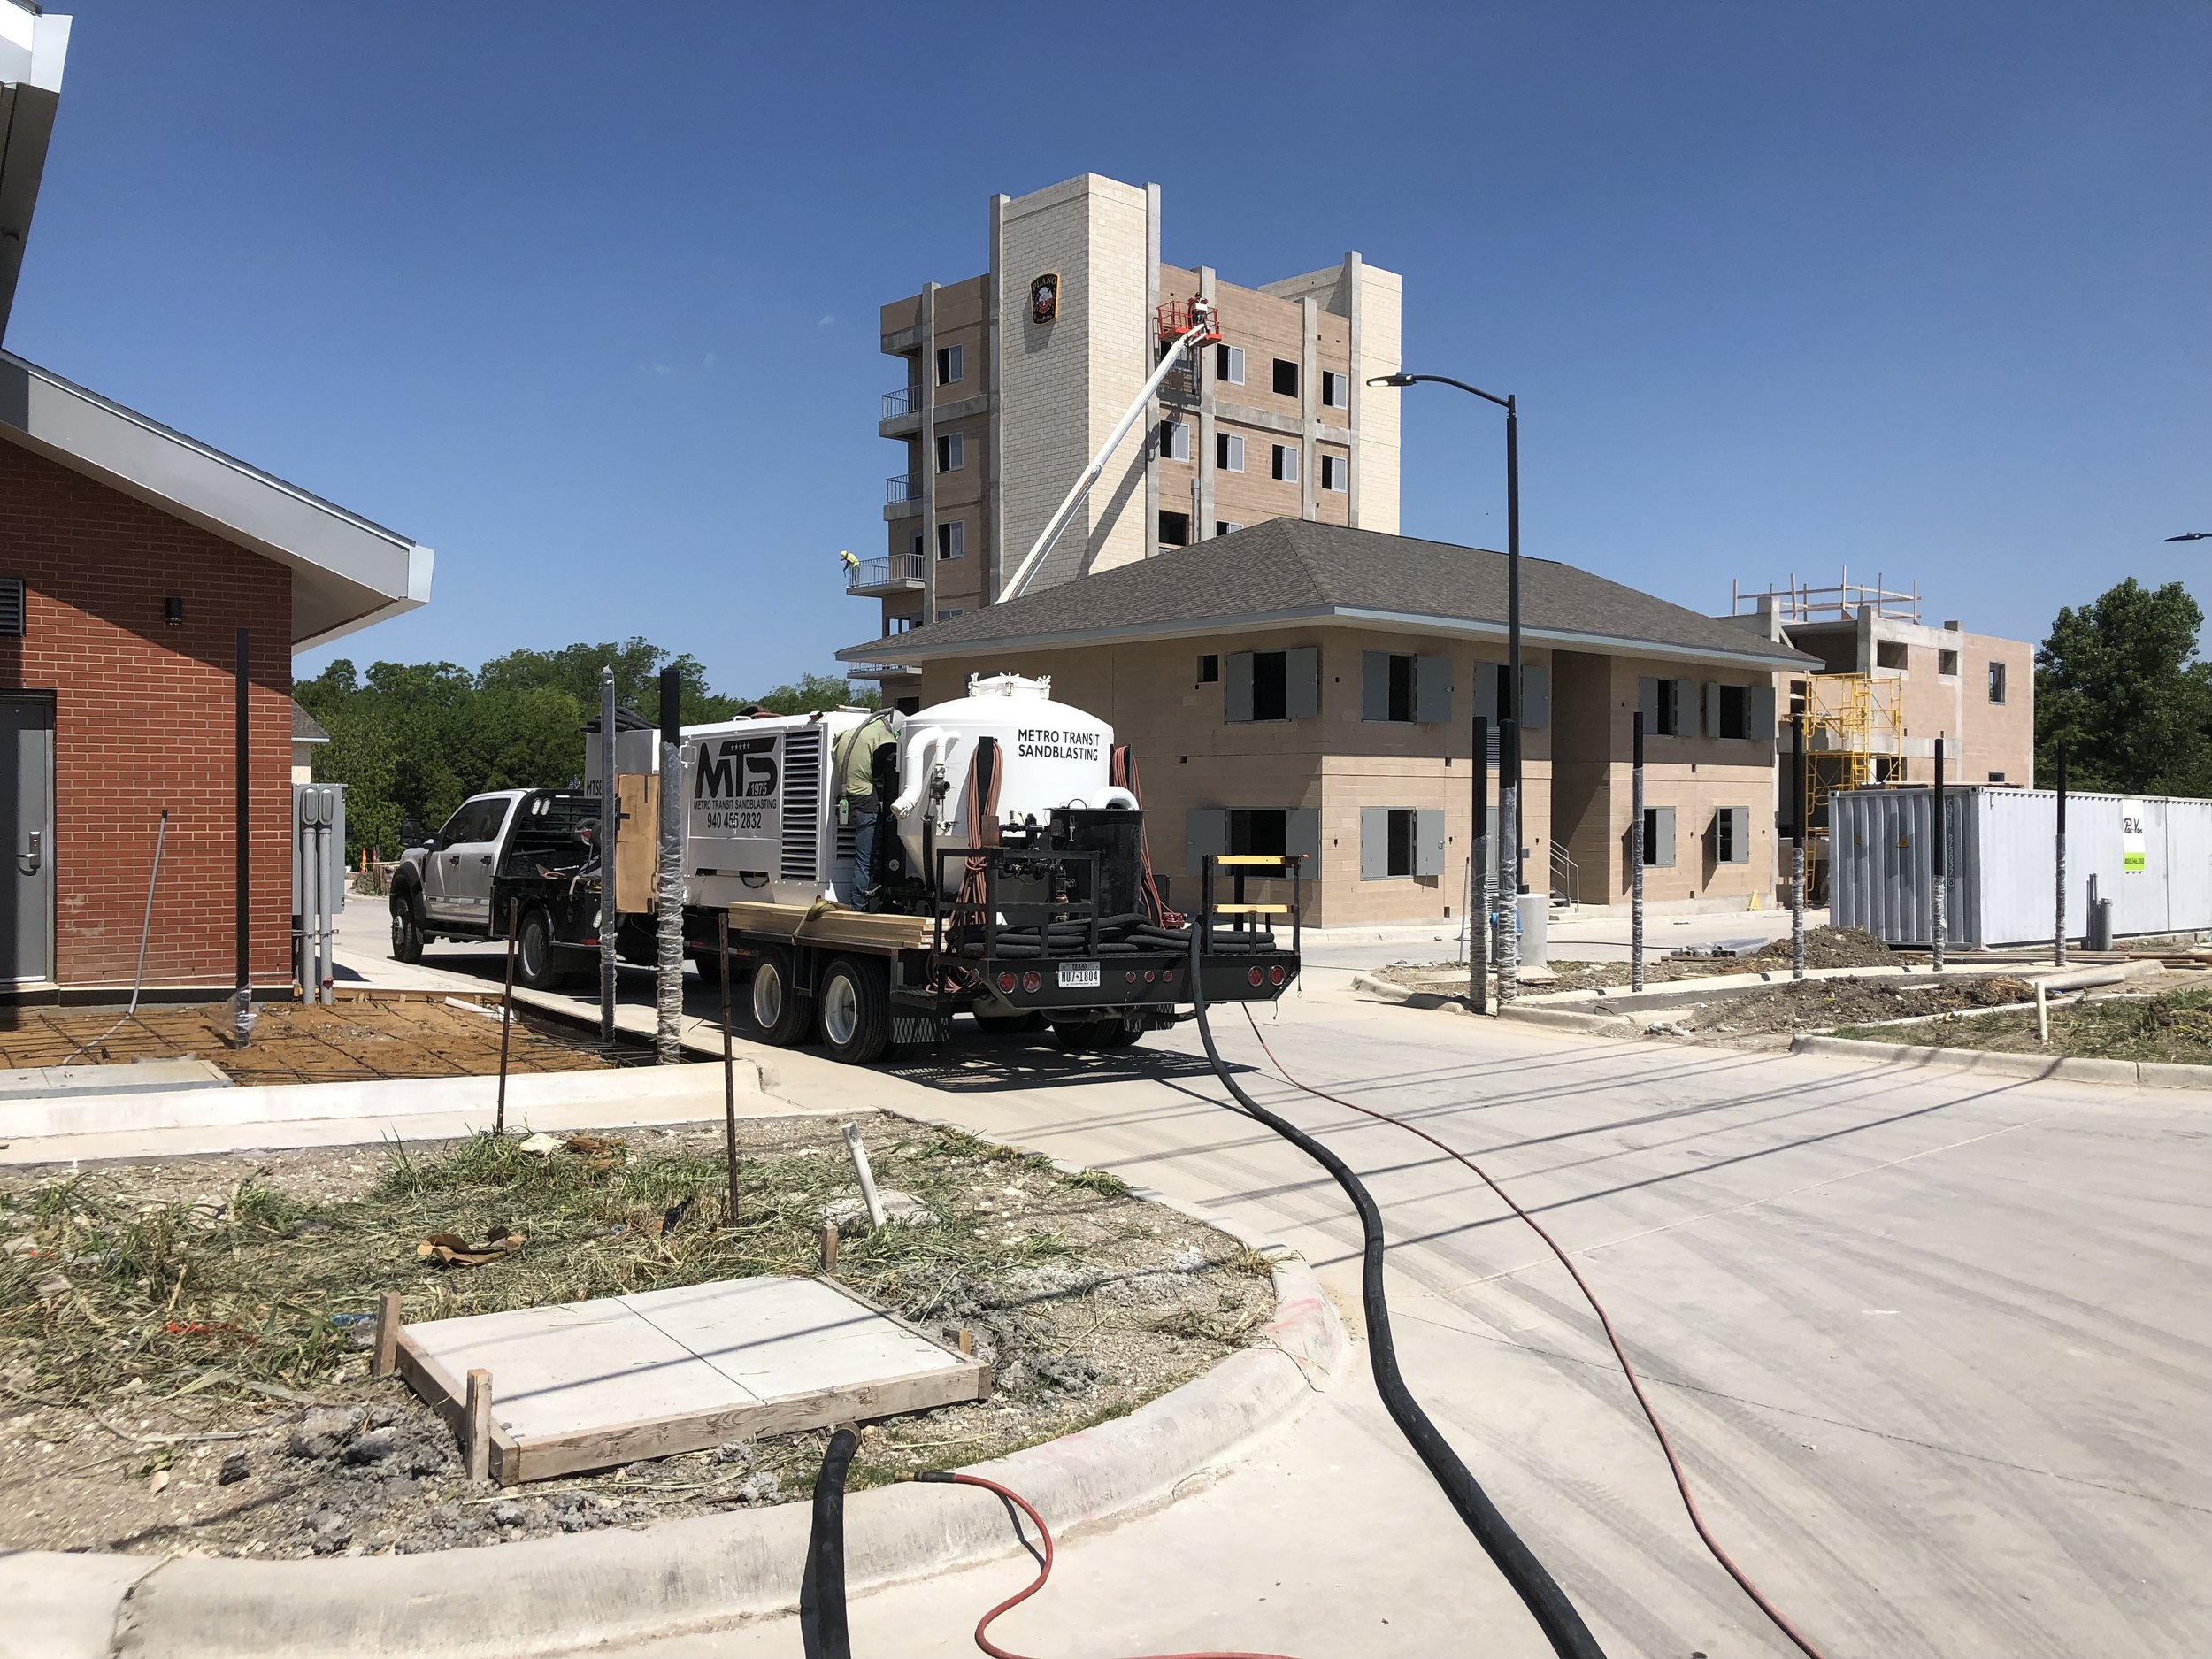 Sandblasting concrete at Plano Fire Academy in Plano, TX